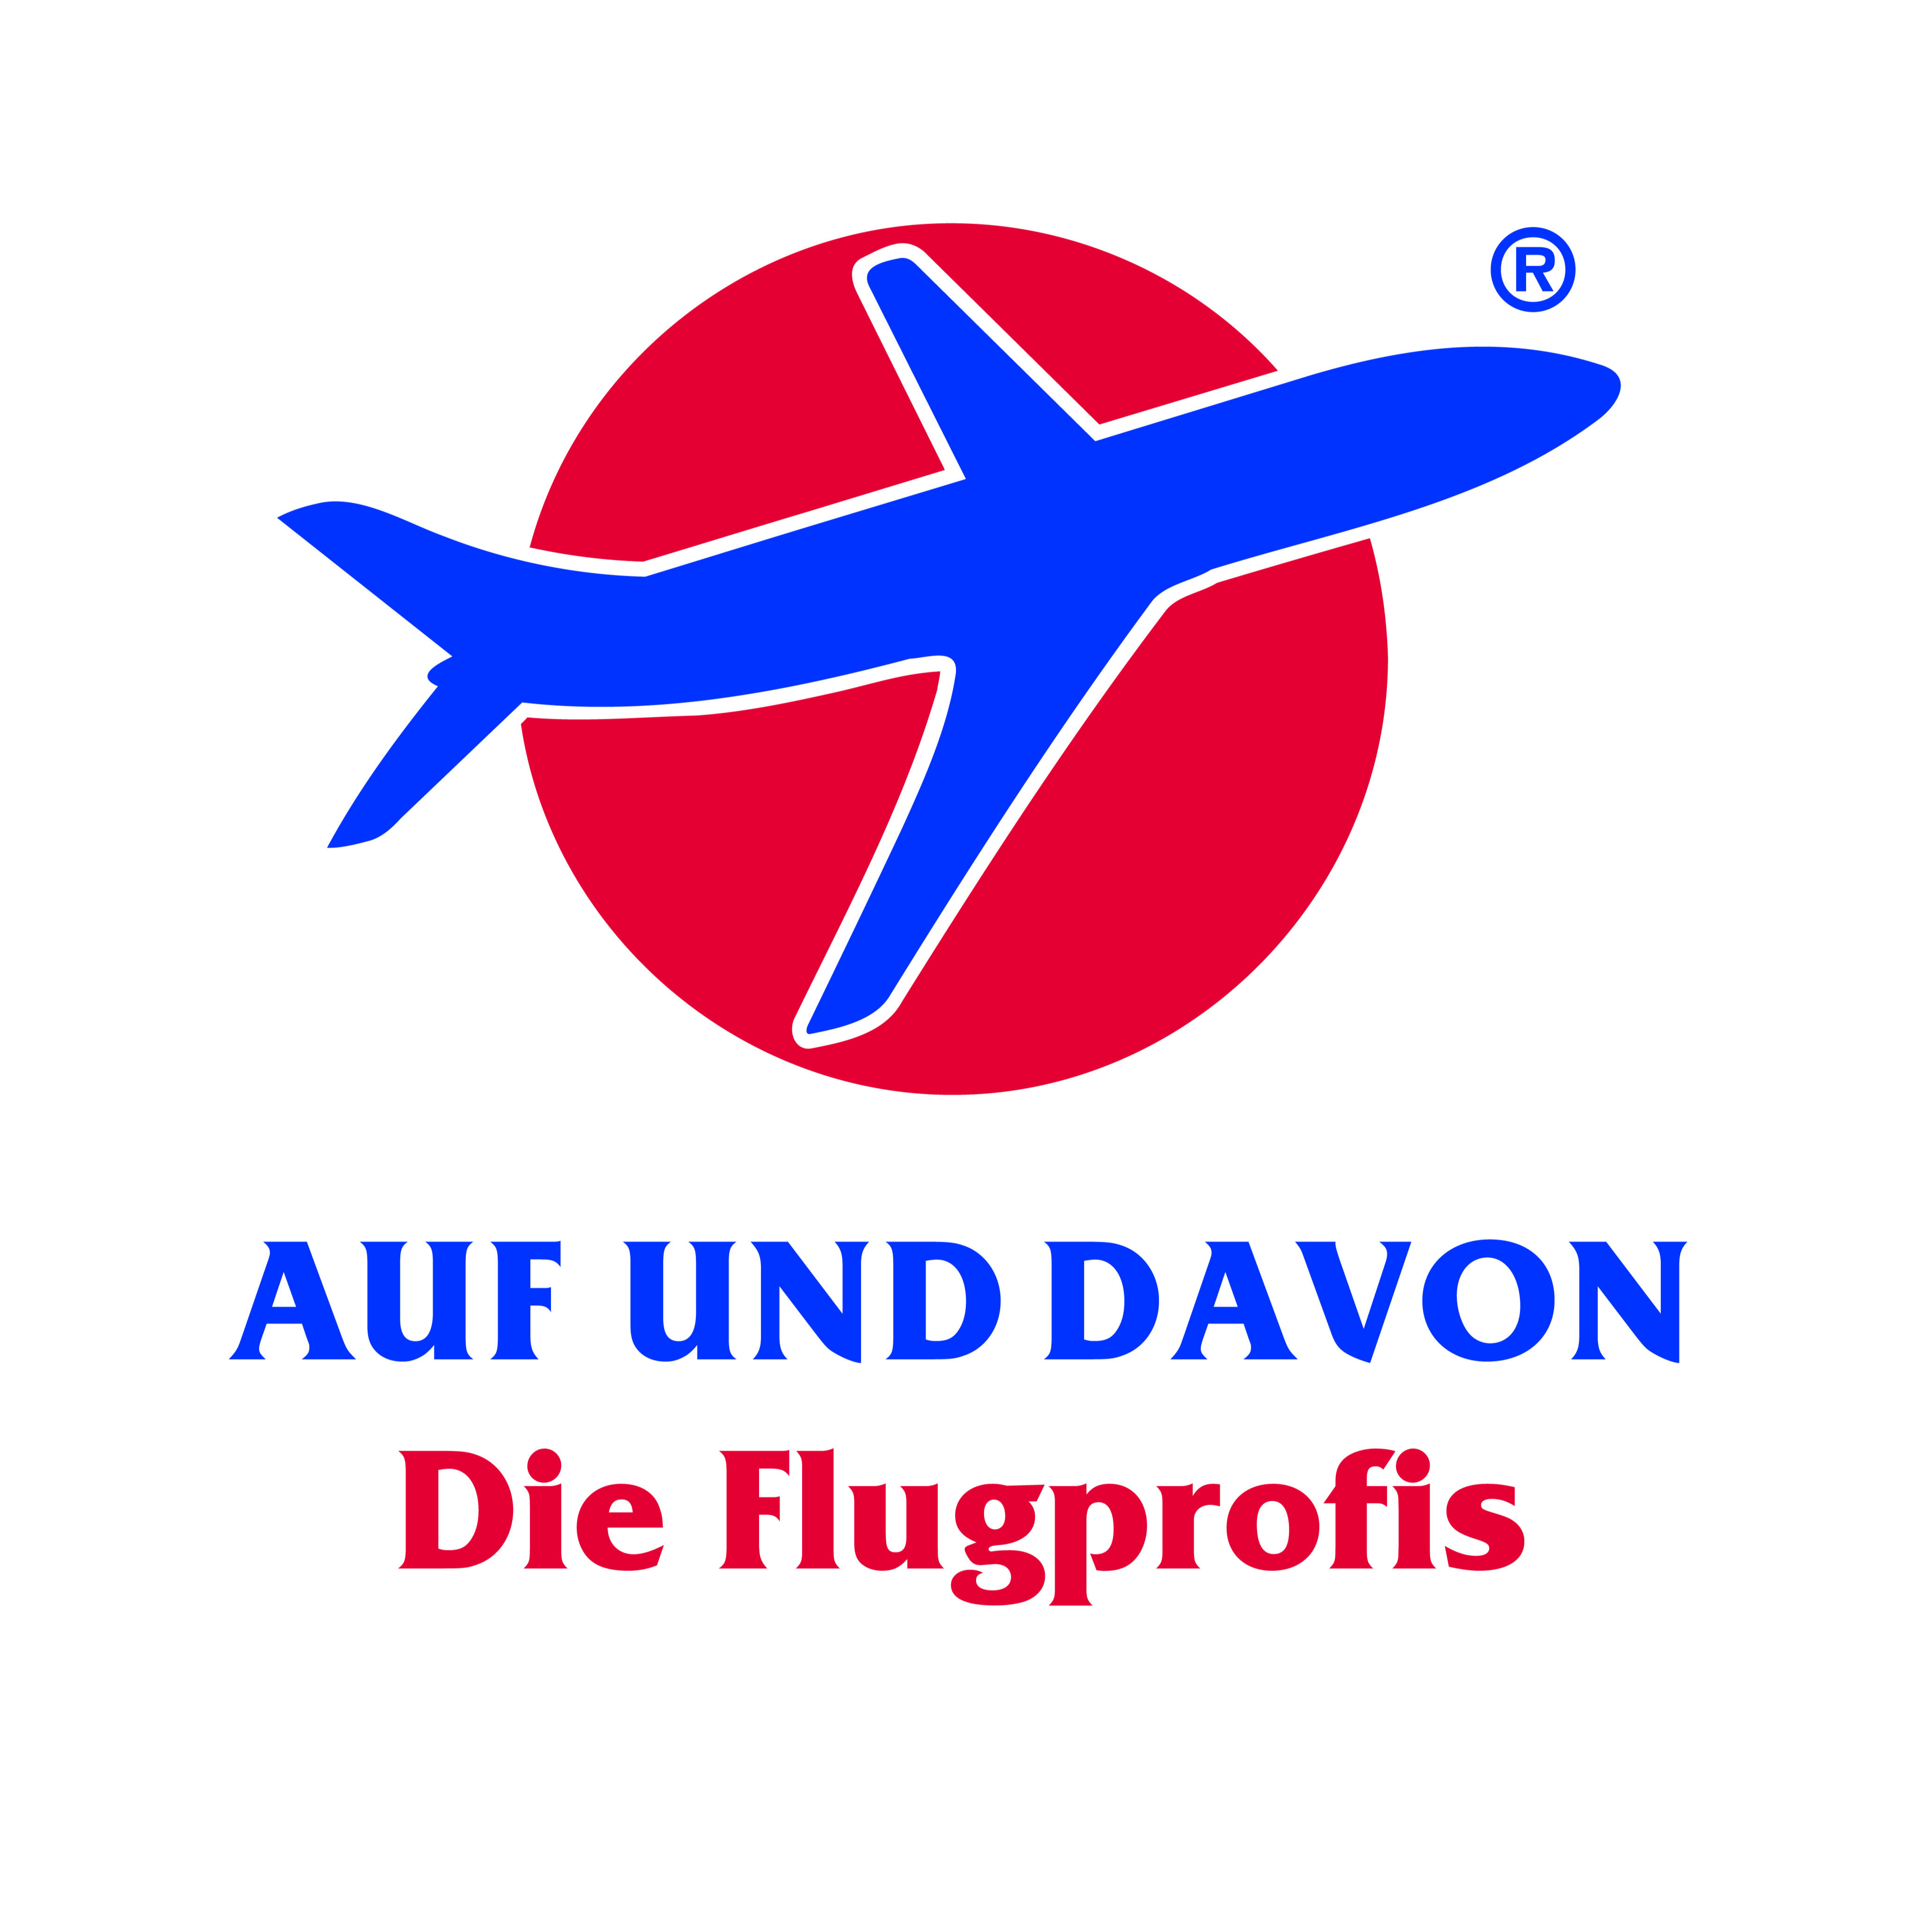 AUF UND DAVON - Die Flugprofis  